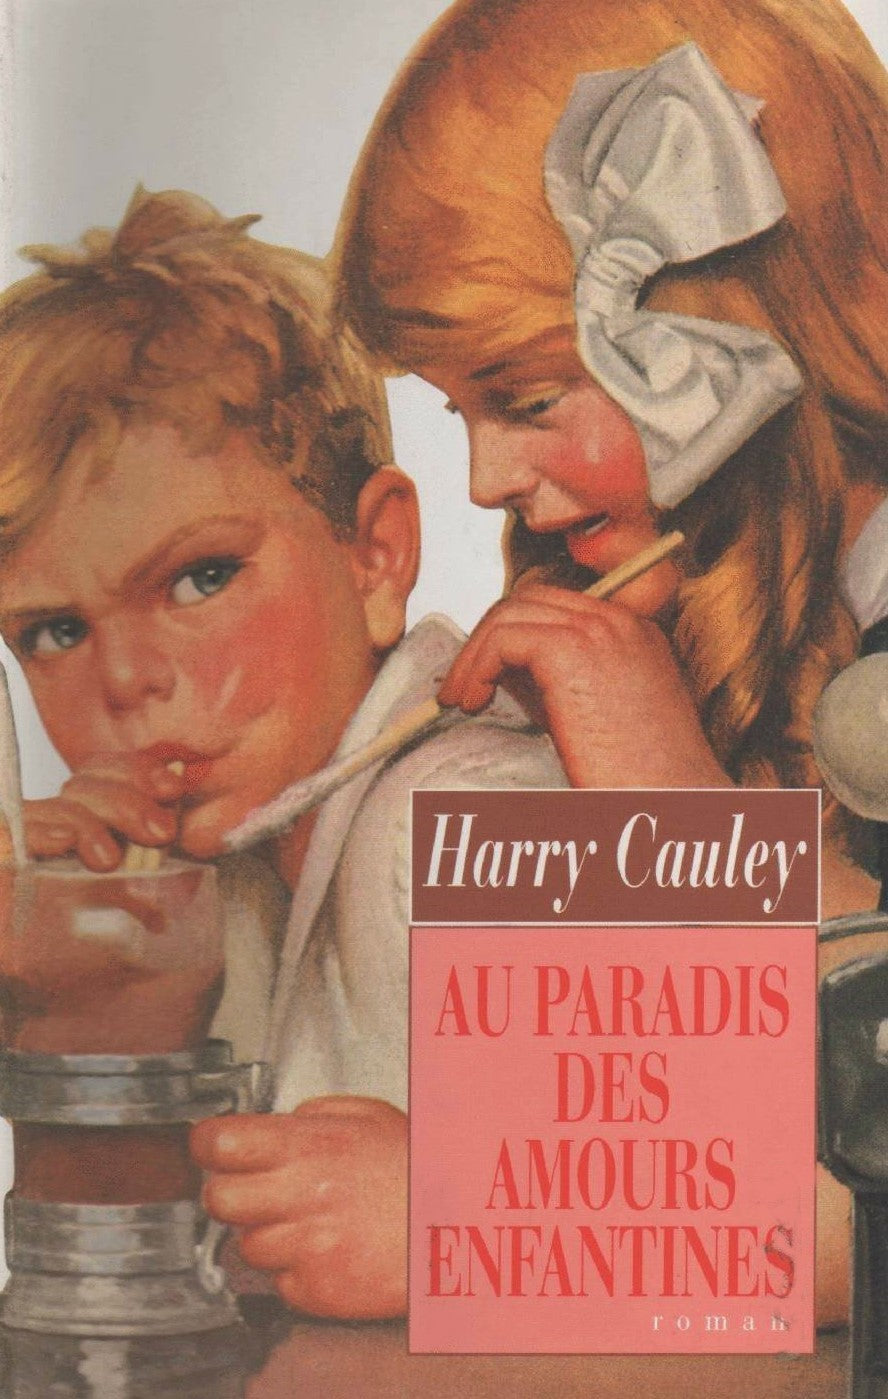 Livre ISBN 2744103942 Au paradis des amours enfantines (Harry Cauley)